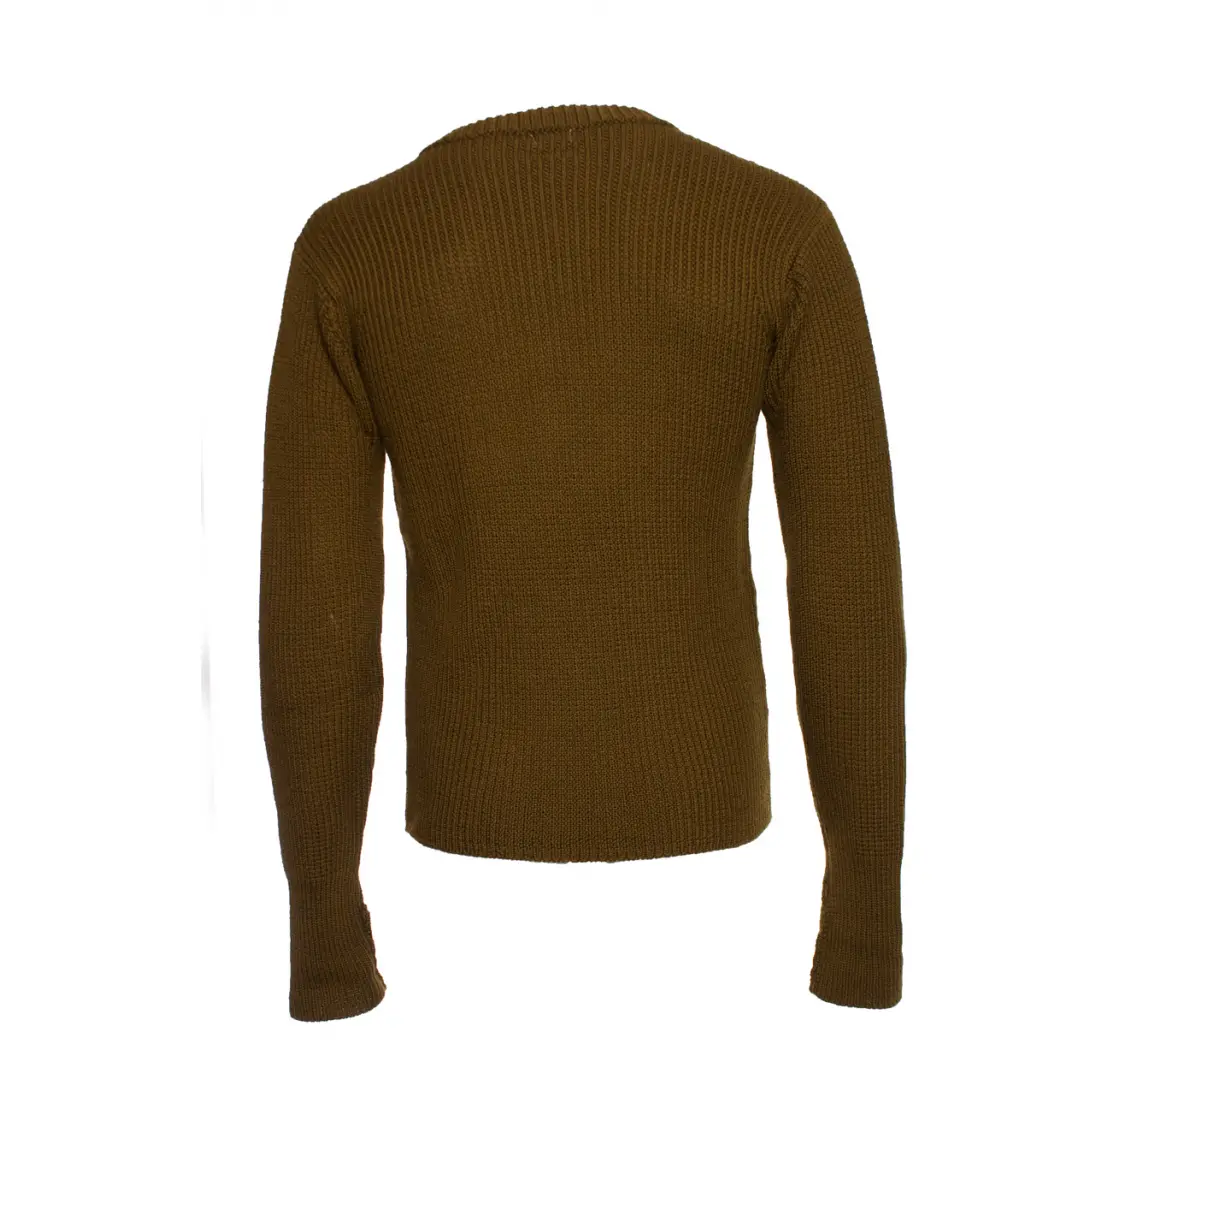 Buy Paul Smith Wool knitwear & sweatshirt online